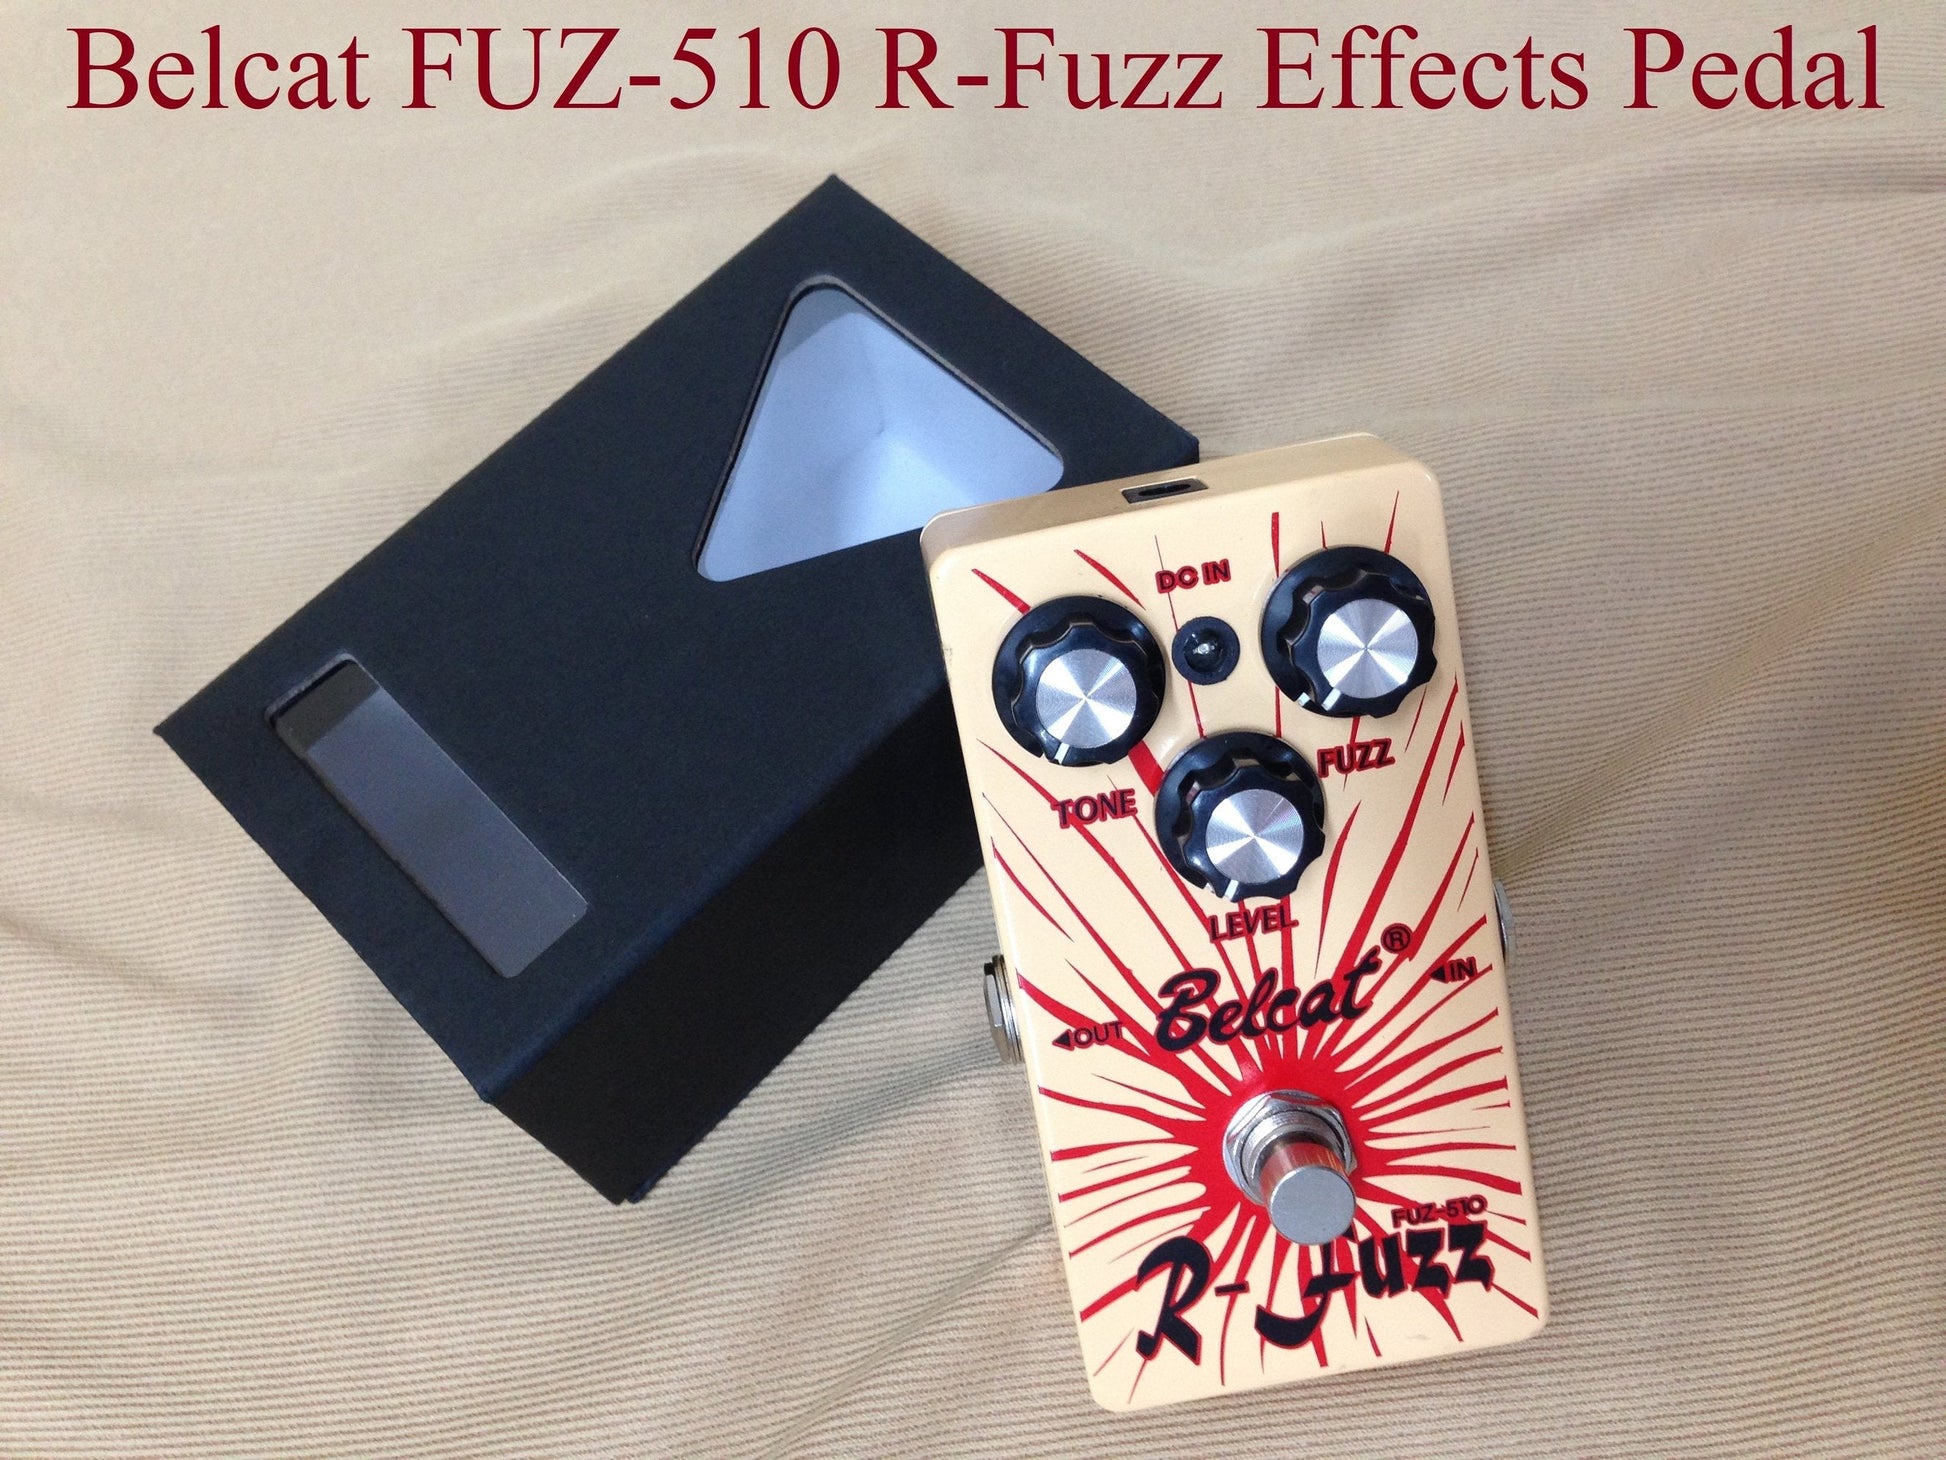 Belcat FUZ510 R-Fuzz Effects Pedal